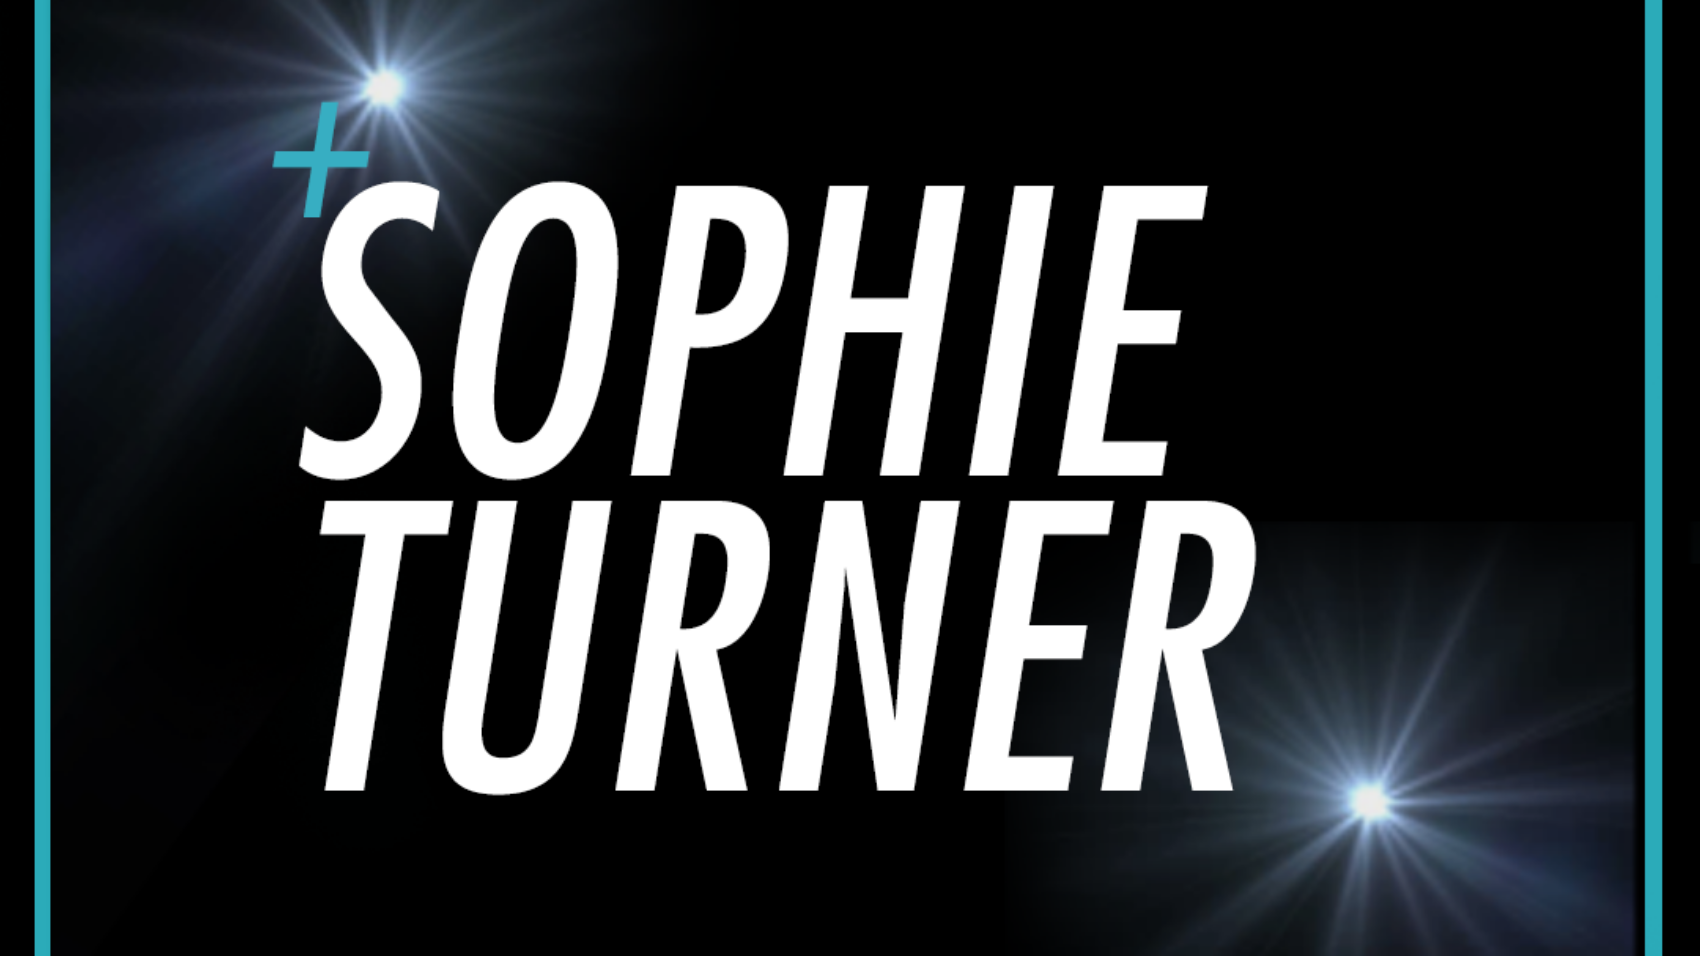 Sophie-Turner